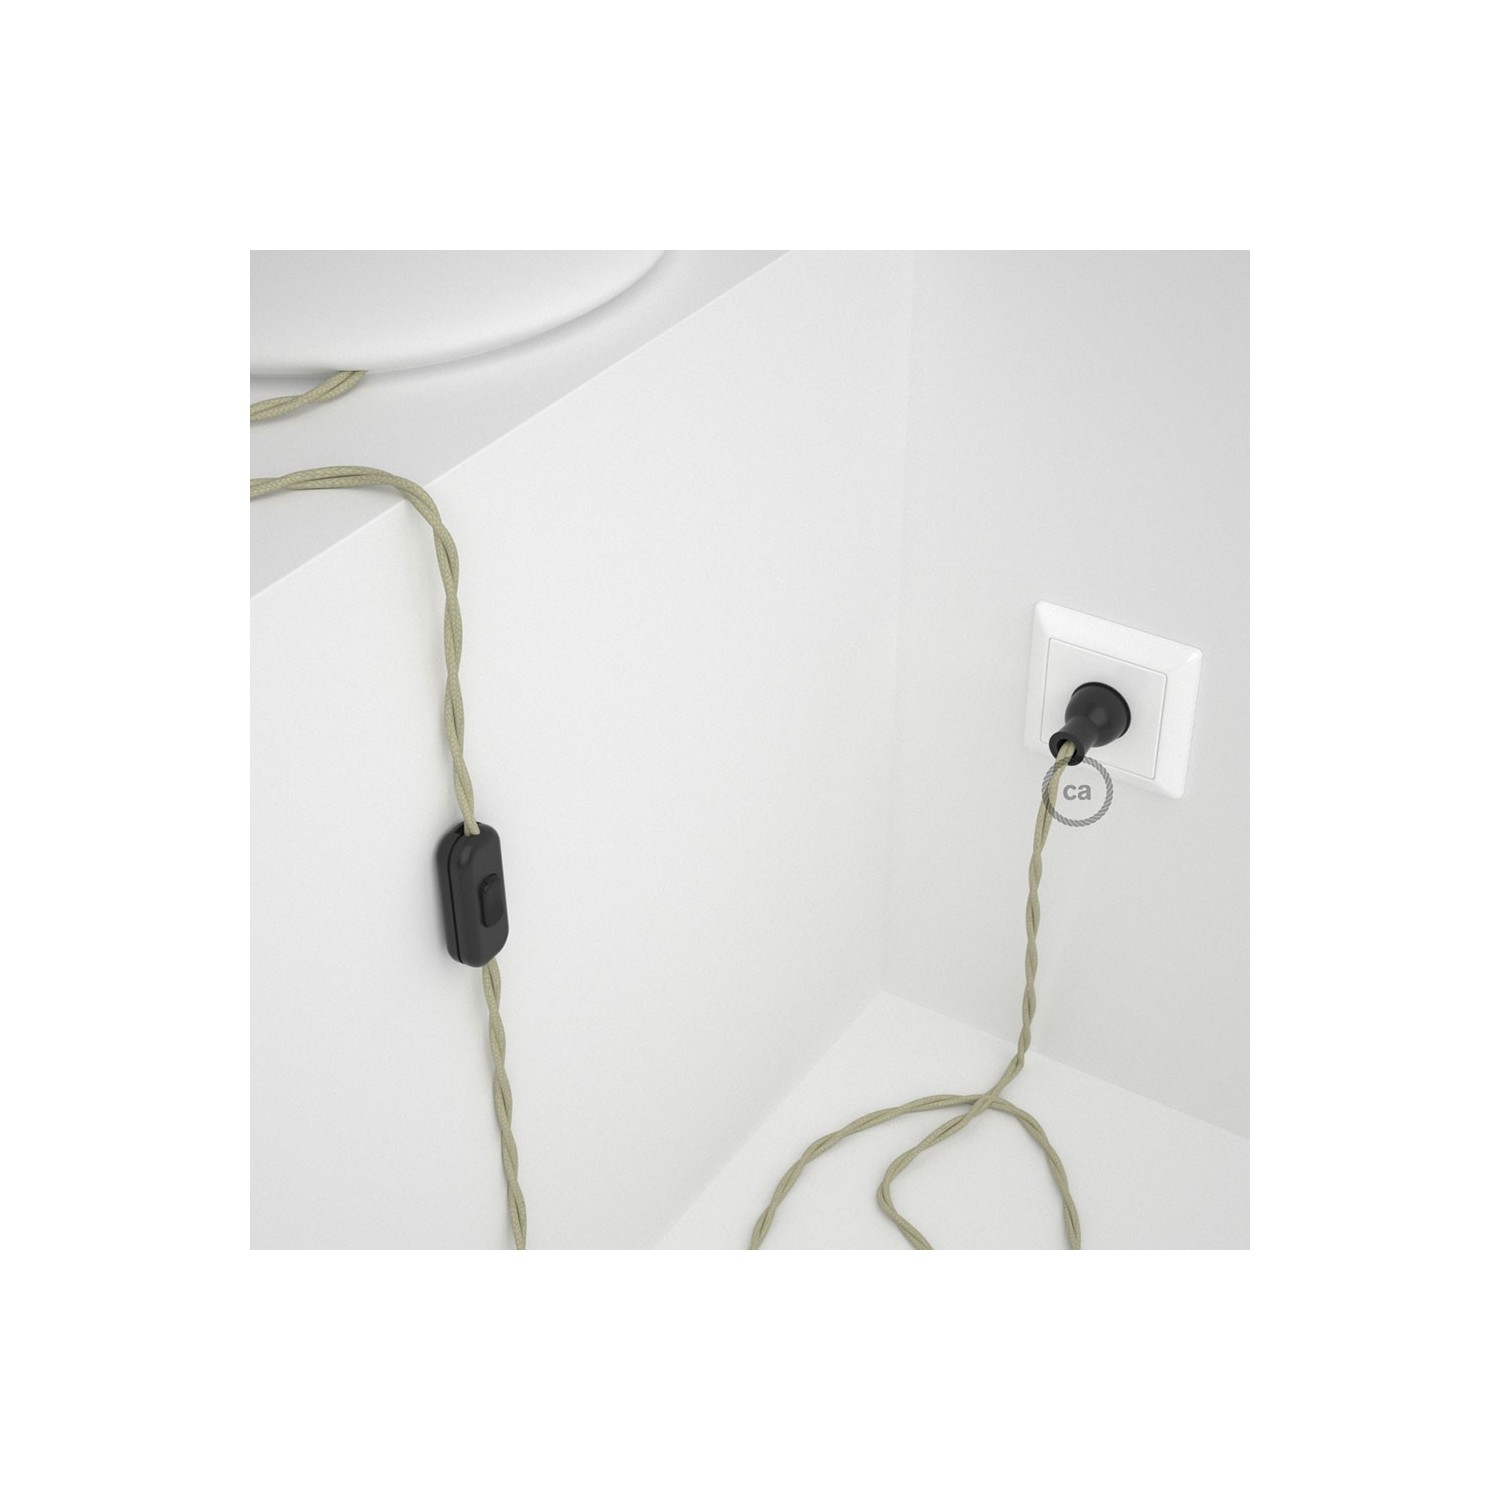 Cableado para lámpara de mesa, cable TC43 Algodón Gris Pardo 1,8 m. Elige el color de la clavija y del interruptor!